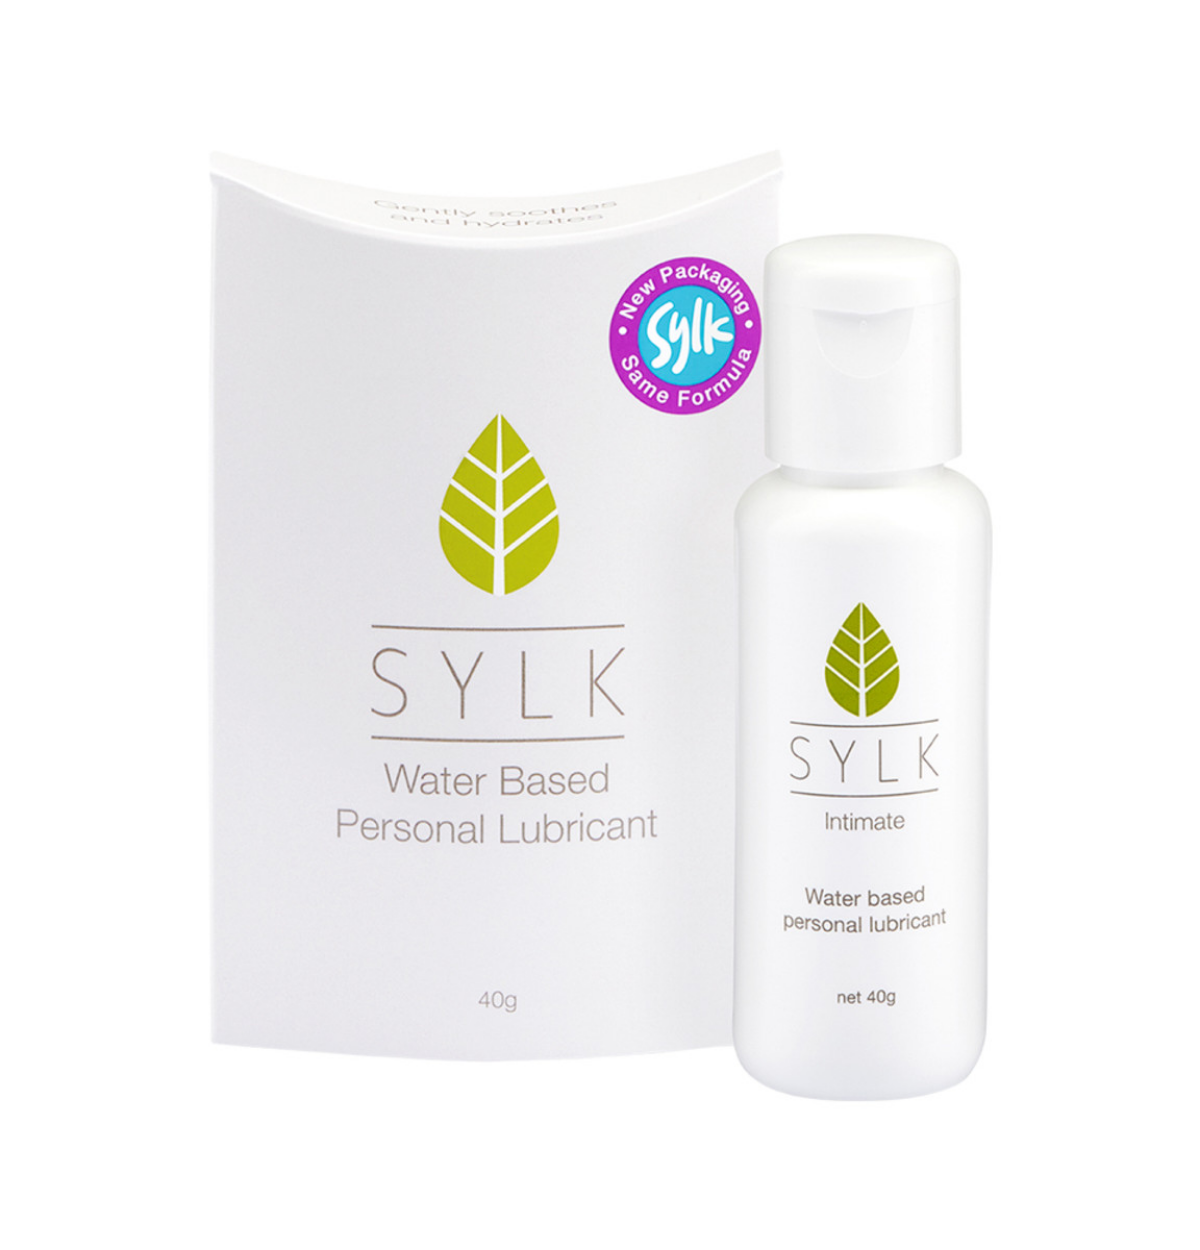  4b R O, SYLK % Water Based S el K Personal Lubricant Intimate Water based personal lubricant 40g net 40g 